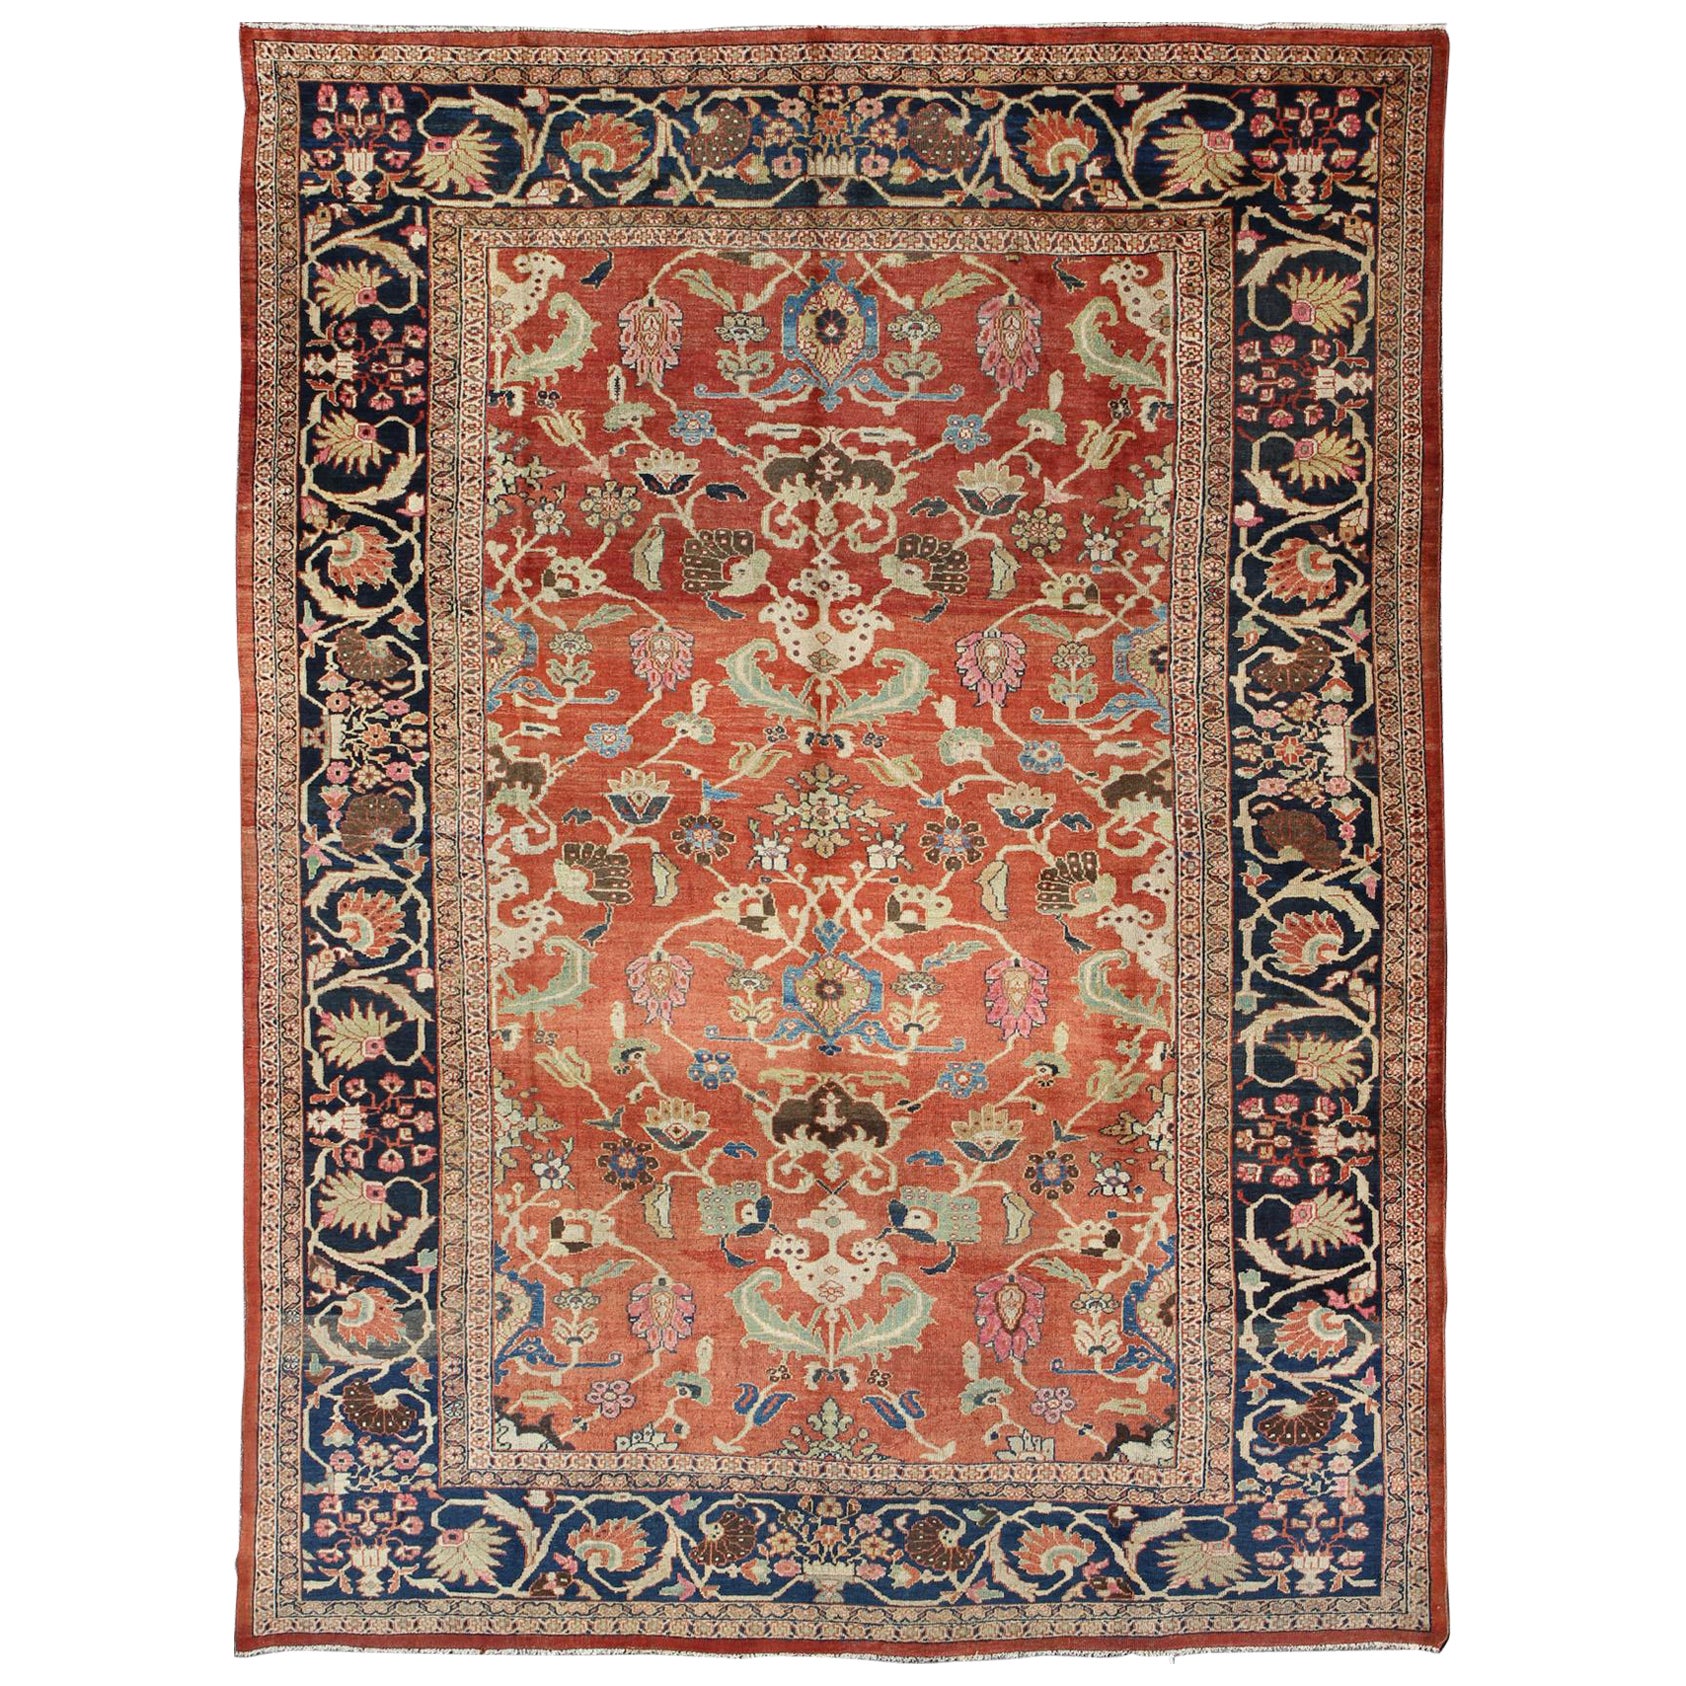 Grand tapis persan ancien noué à la main Sultanabad rouge et bleu